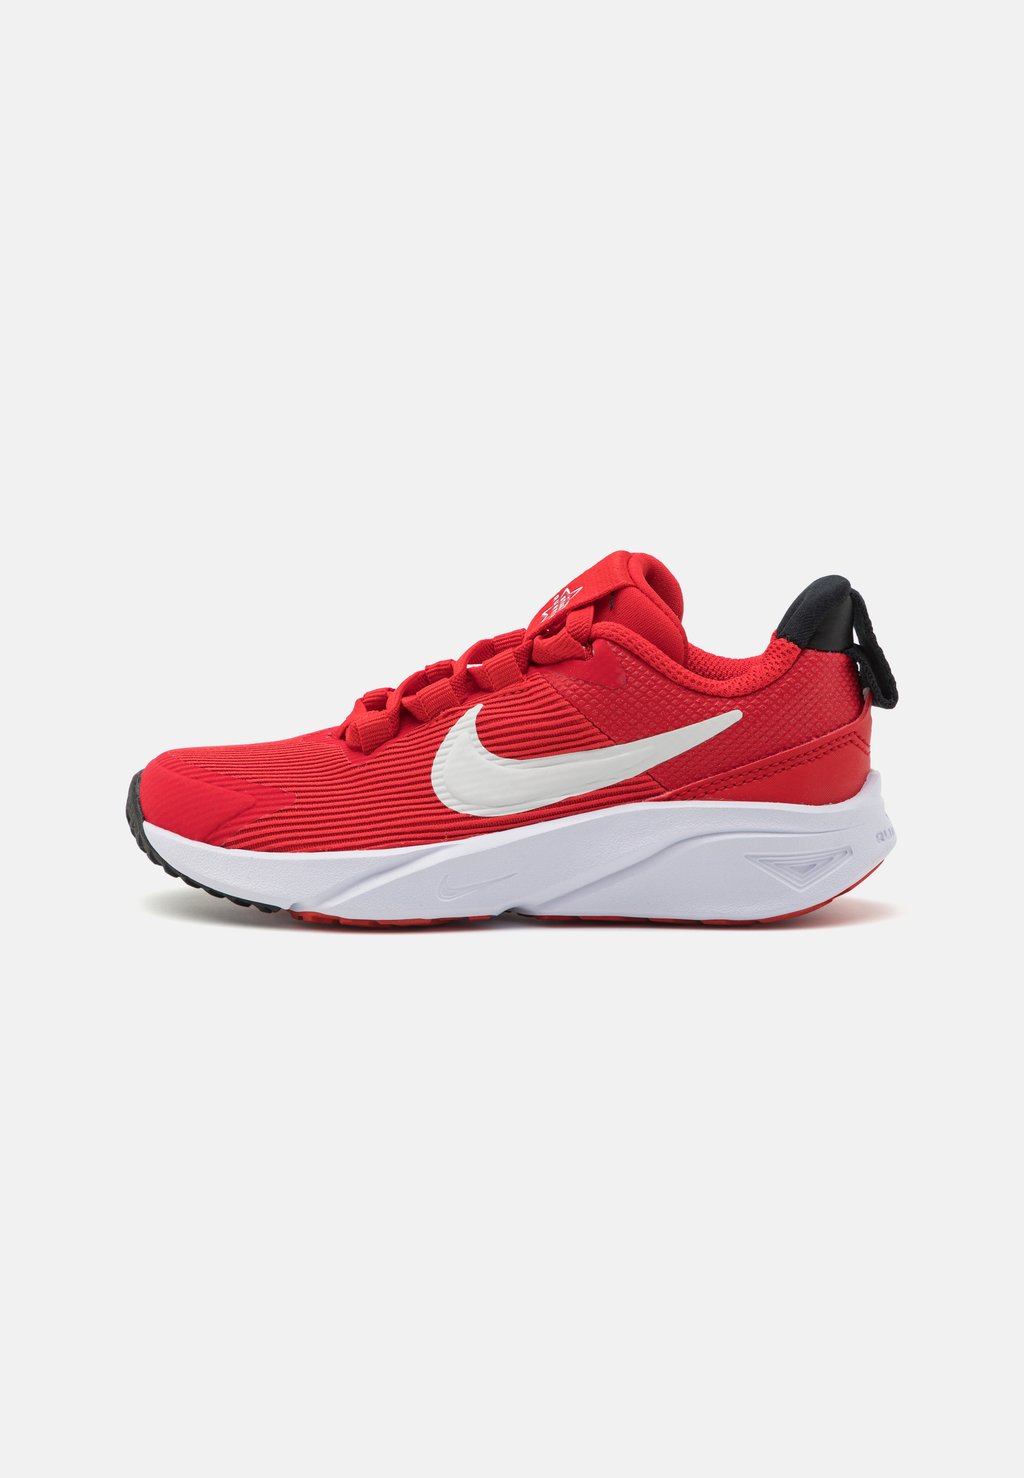 Нейтральные кроссовки Star Runner 4 Unisex Nike, цвет university red/summit white/black/white